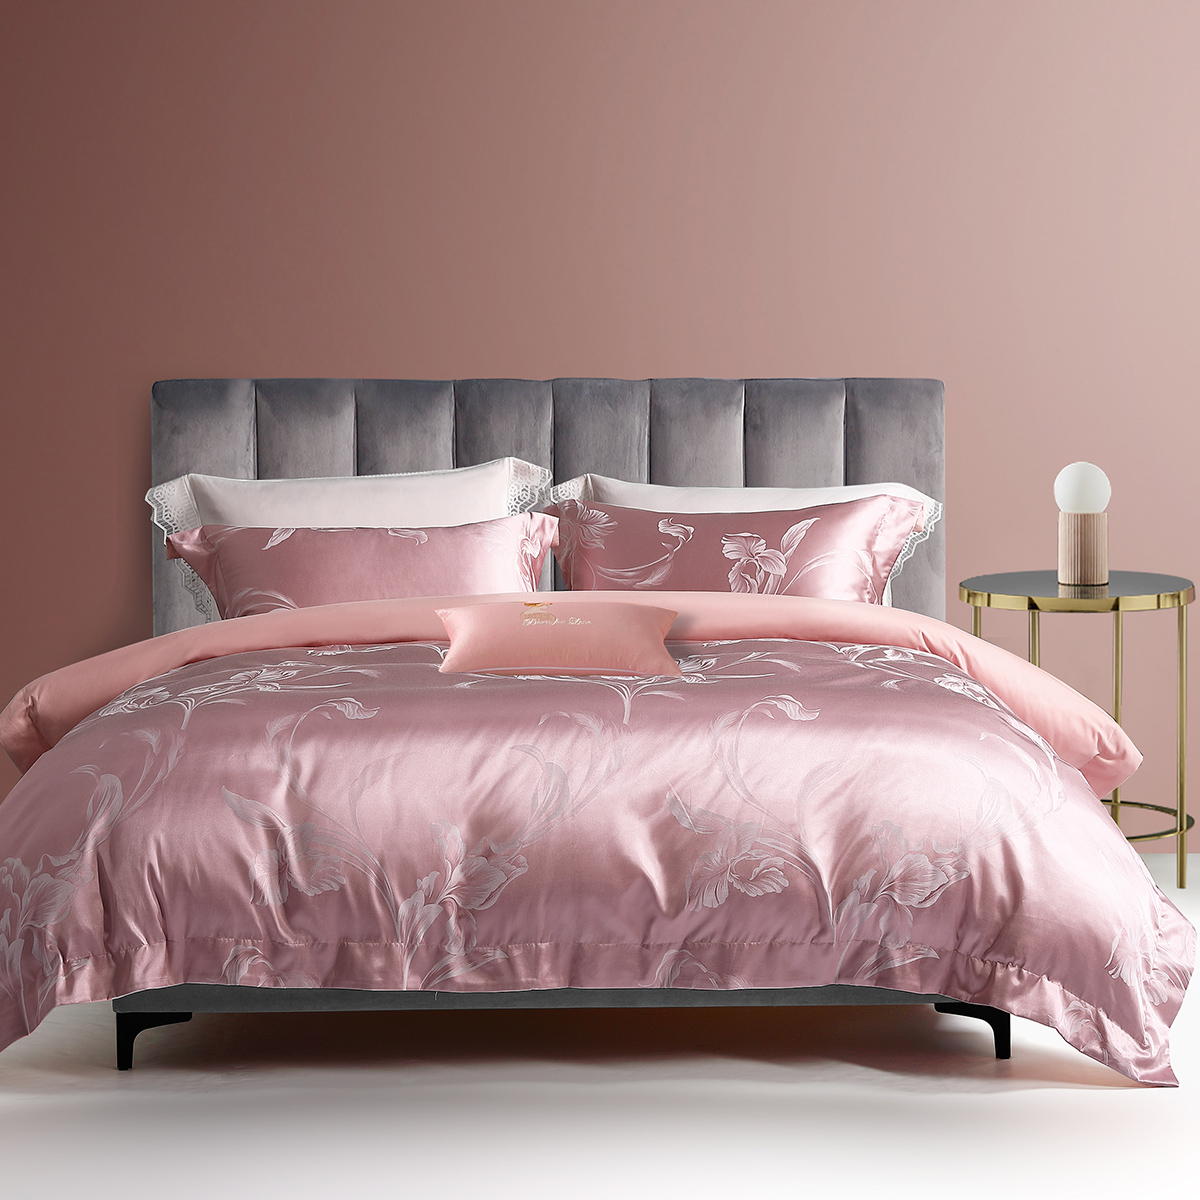 水星家纺素色提花四件套床单被套居家家用套件床上用品1.8 沁雅馨